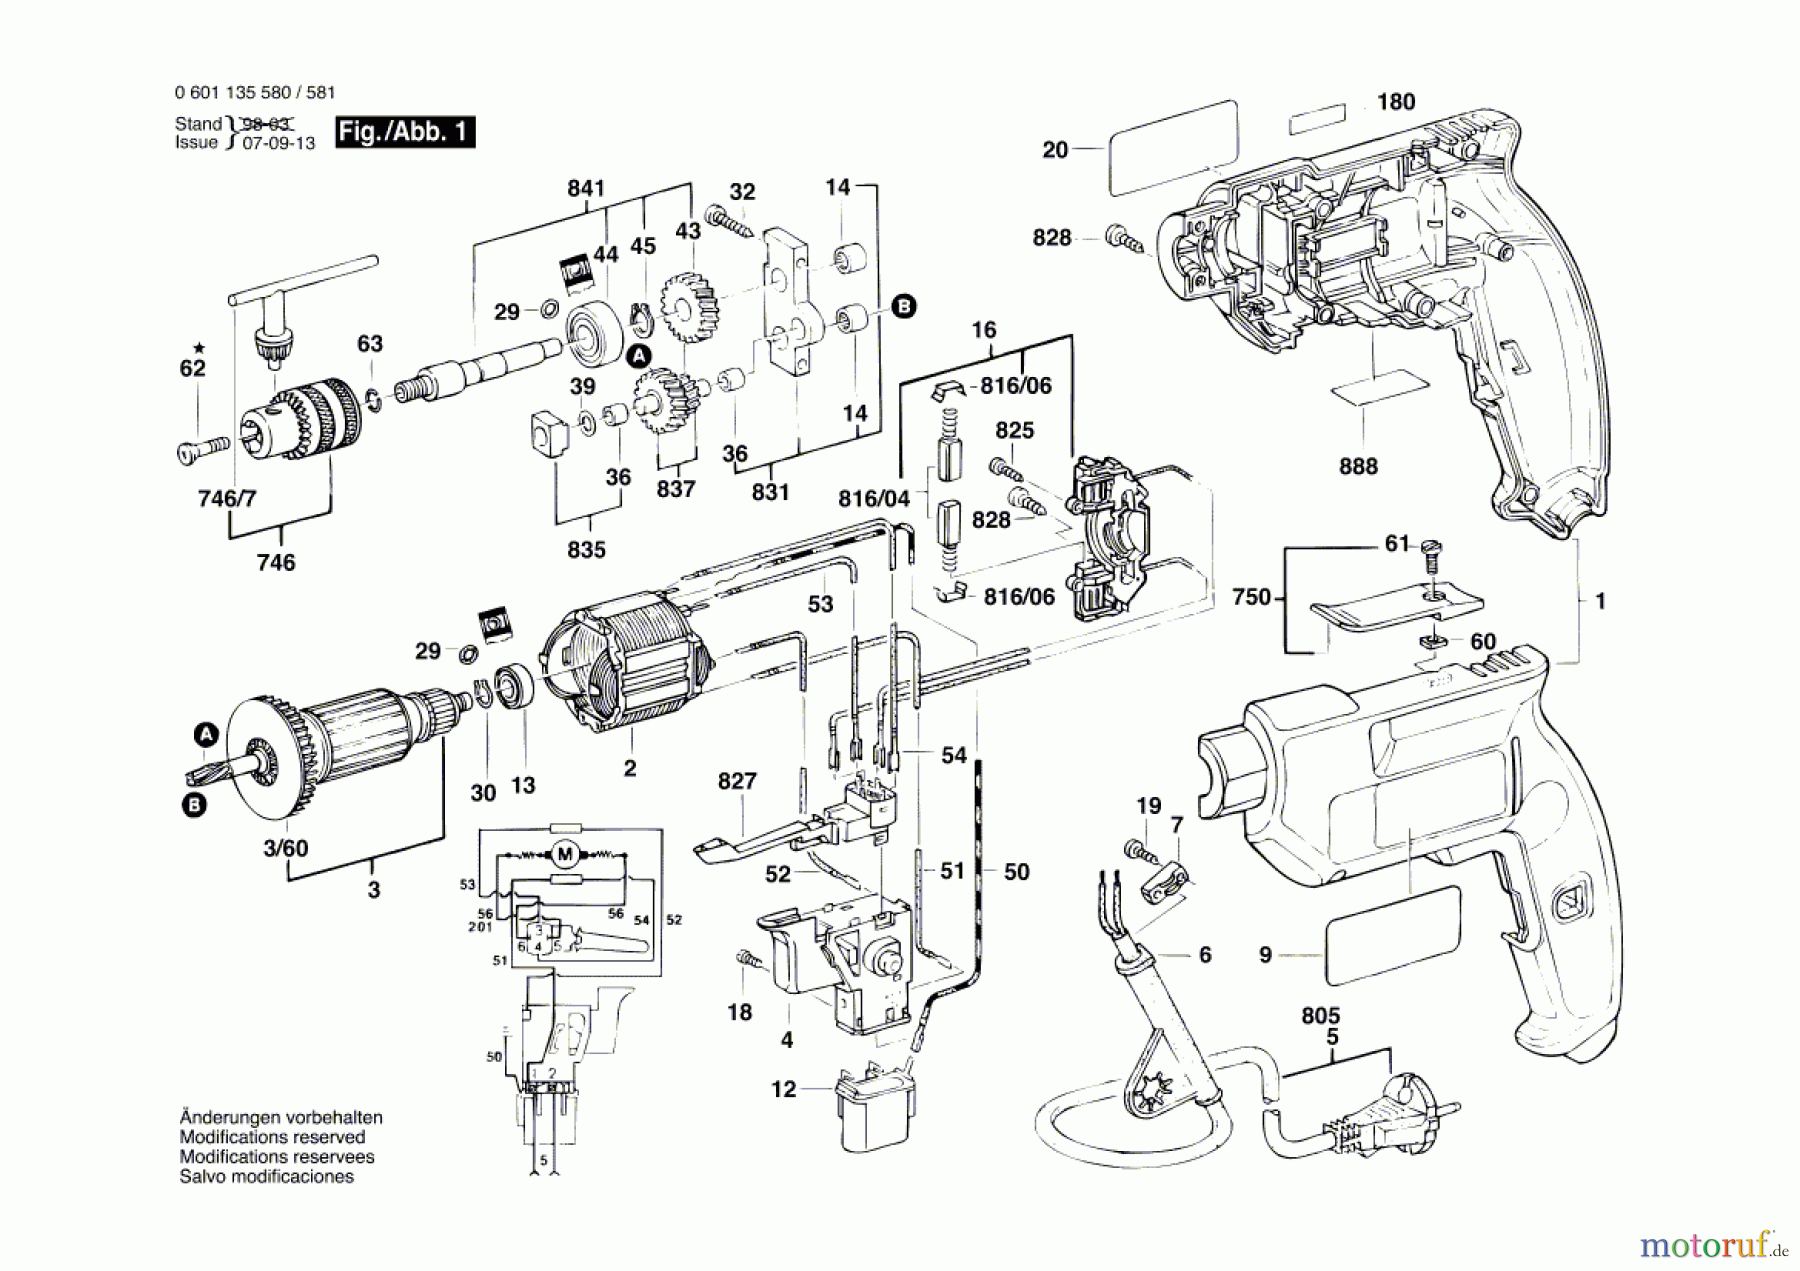  Bosch Werkzeug Bohrmaschine CF 400 Seite 1